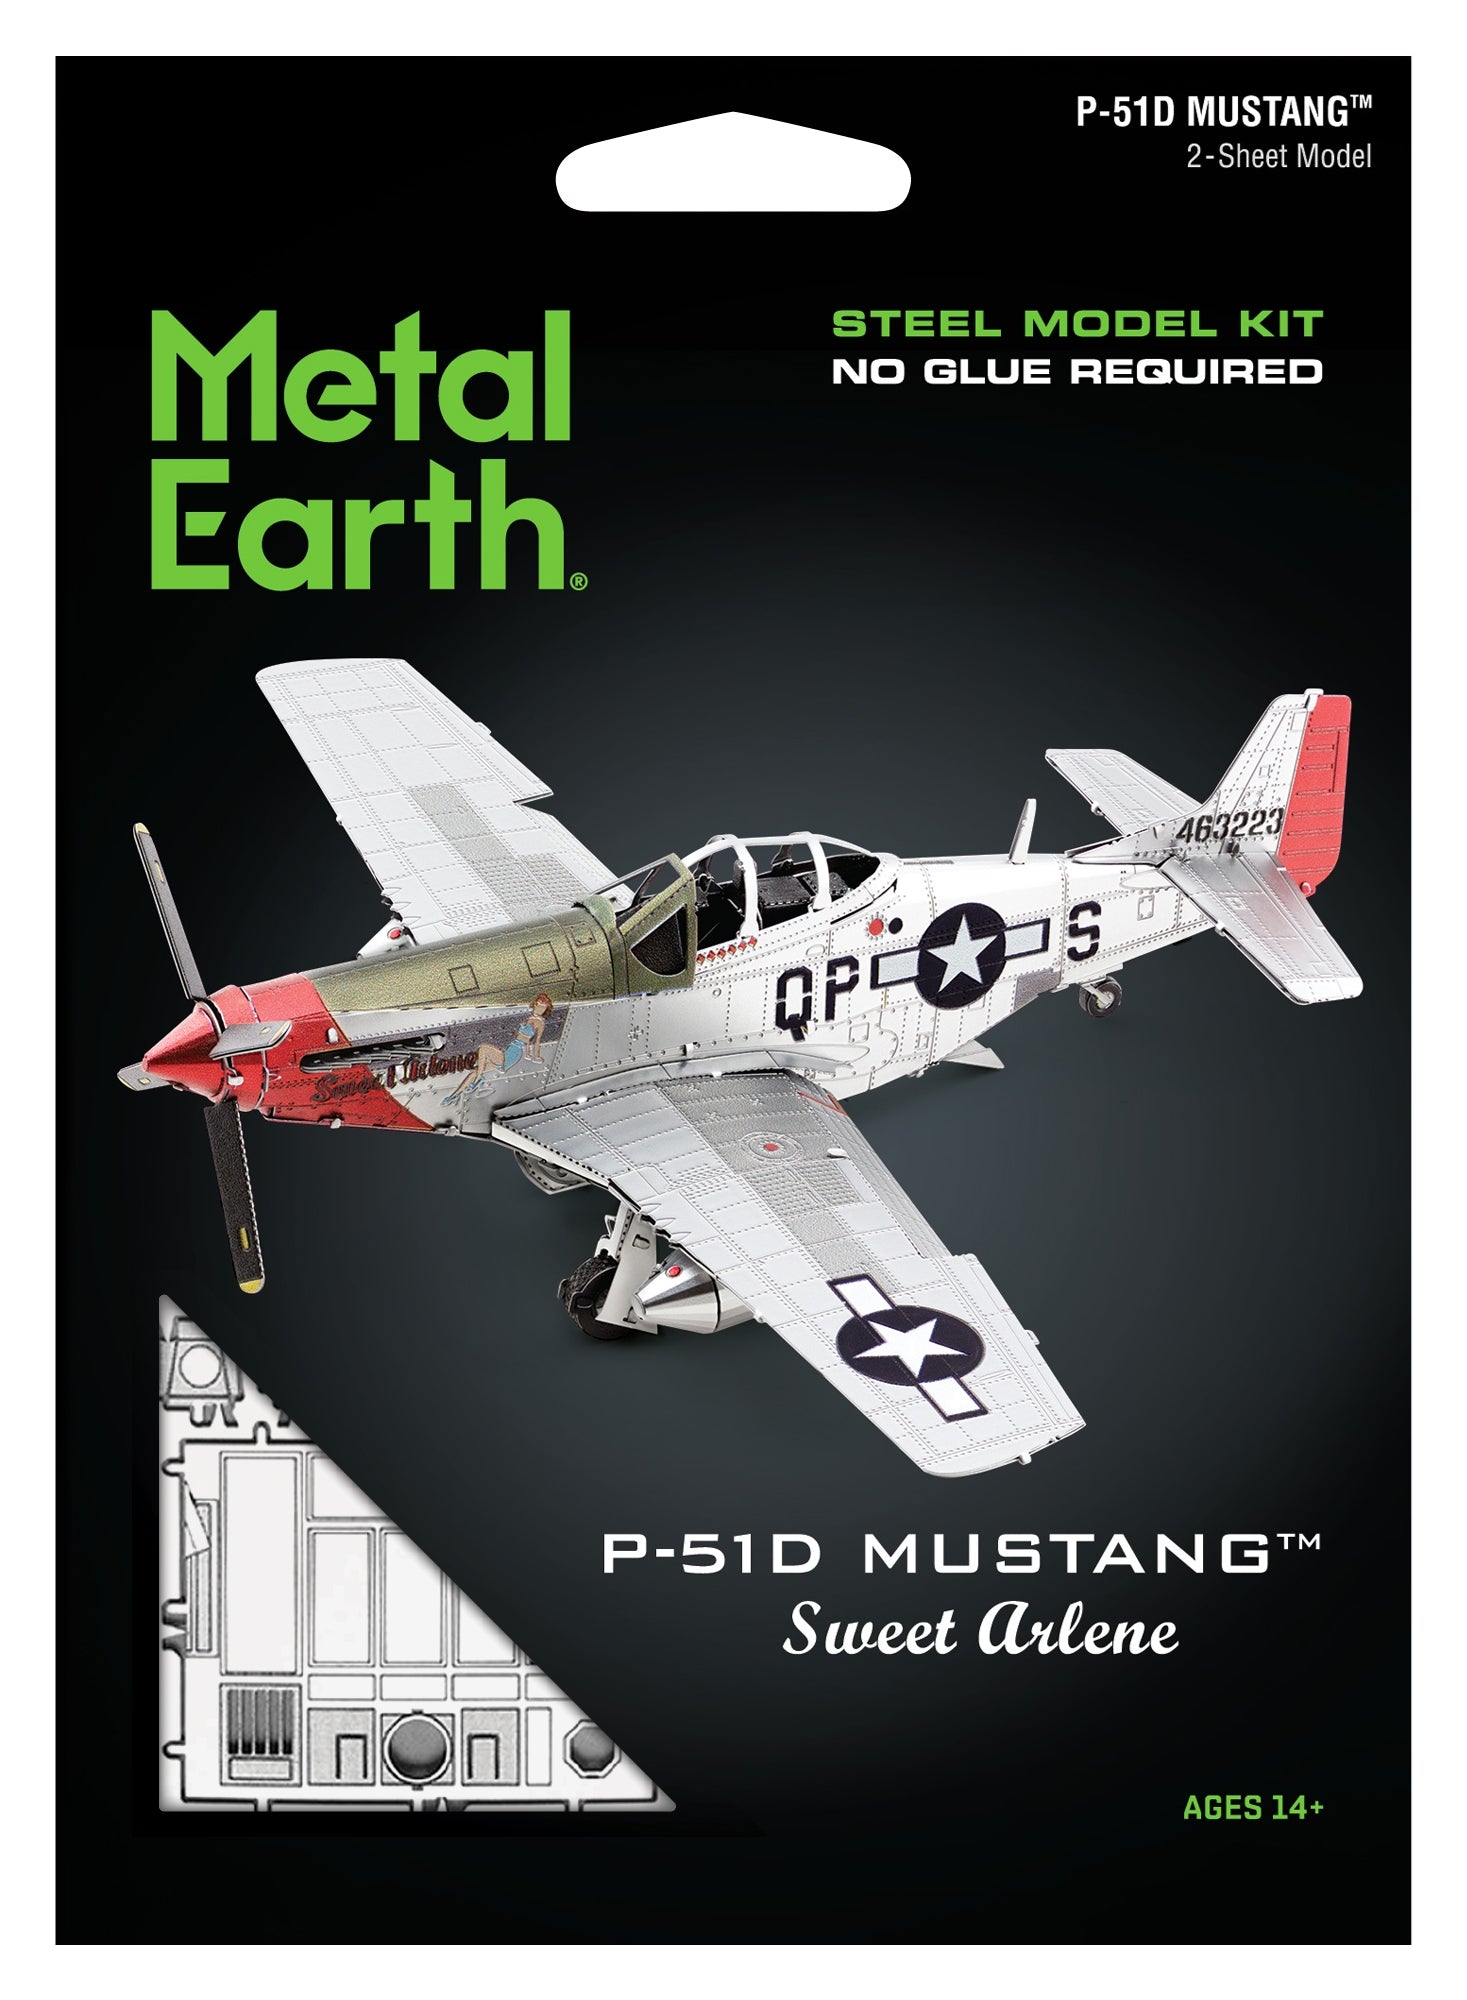 Metal Earth - P-51D Mustang Sweet Arlene    